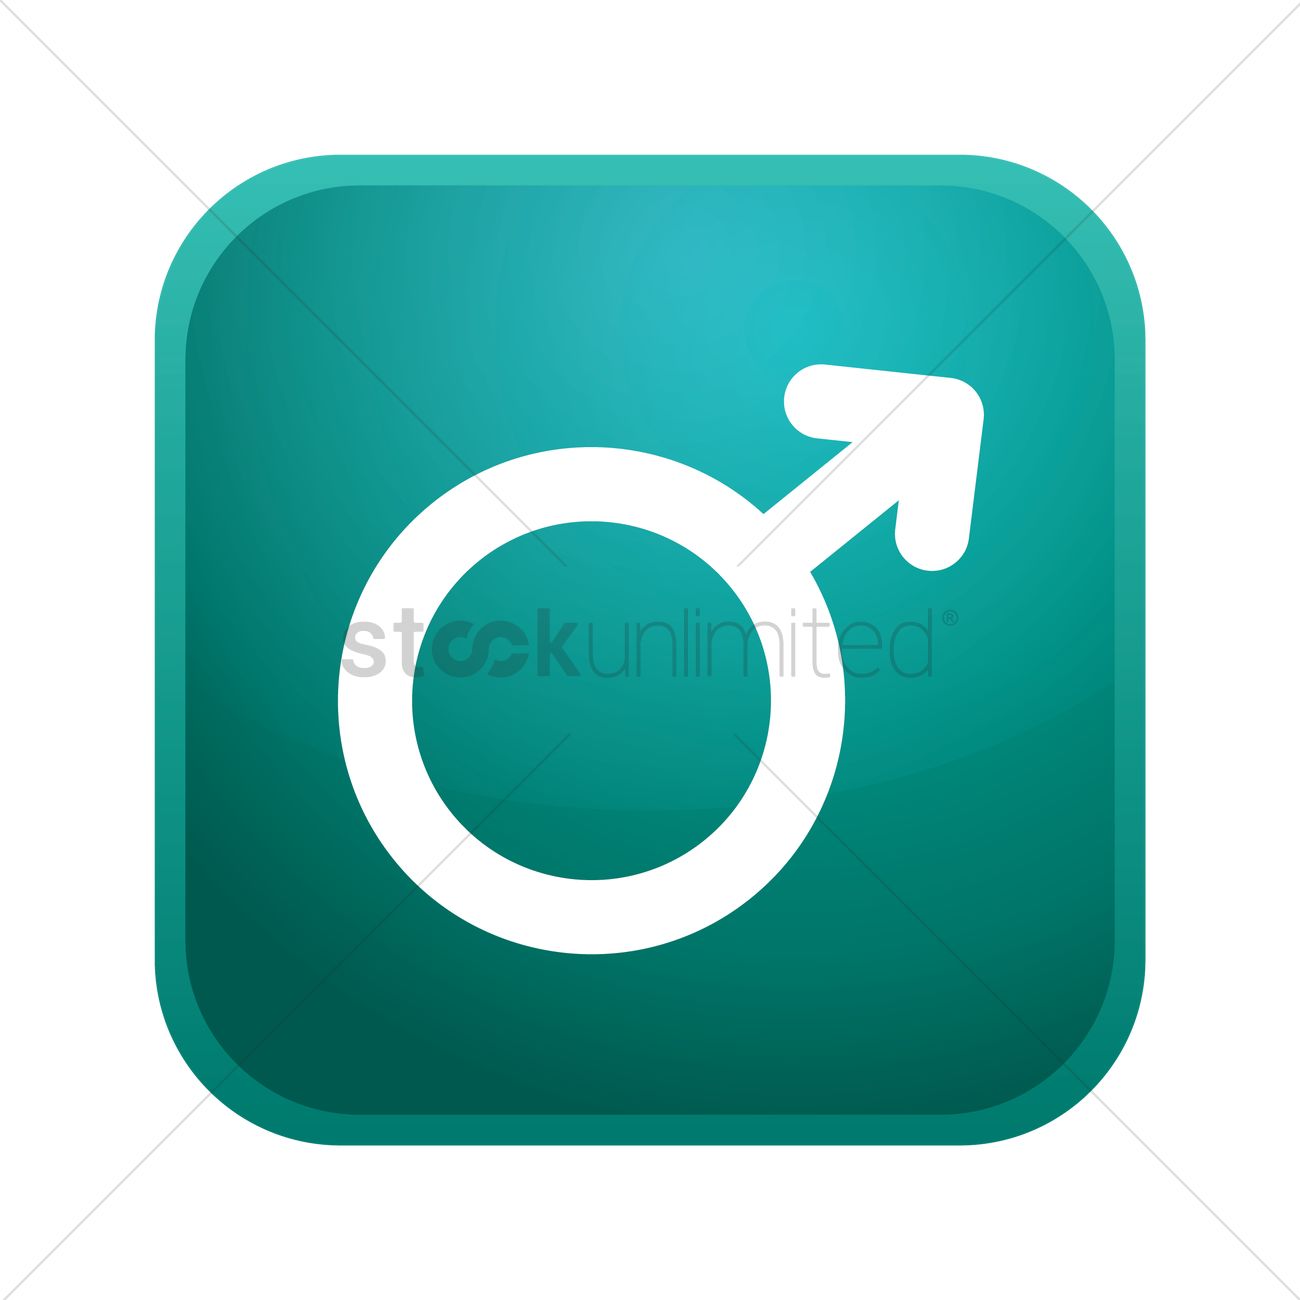 Male gender icon Royalty Free Vector Image - VectorStock